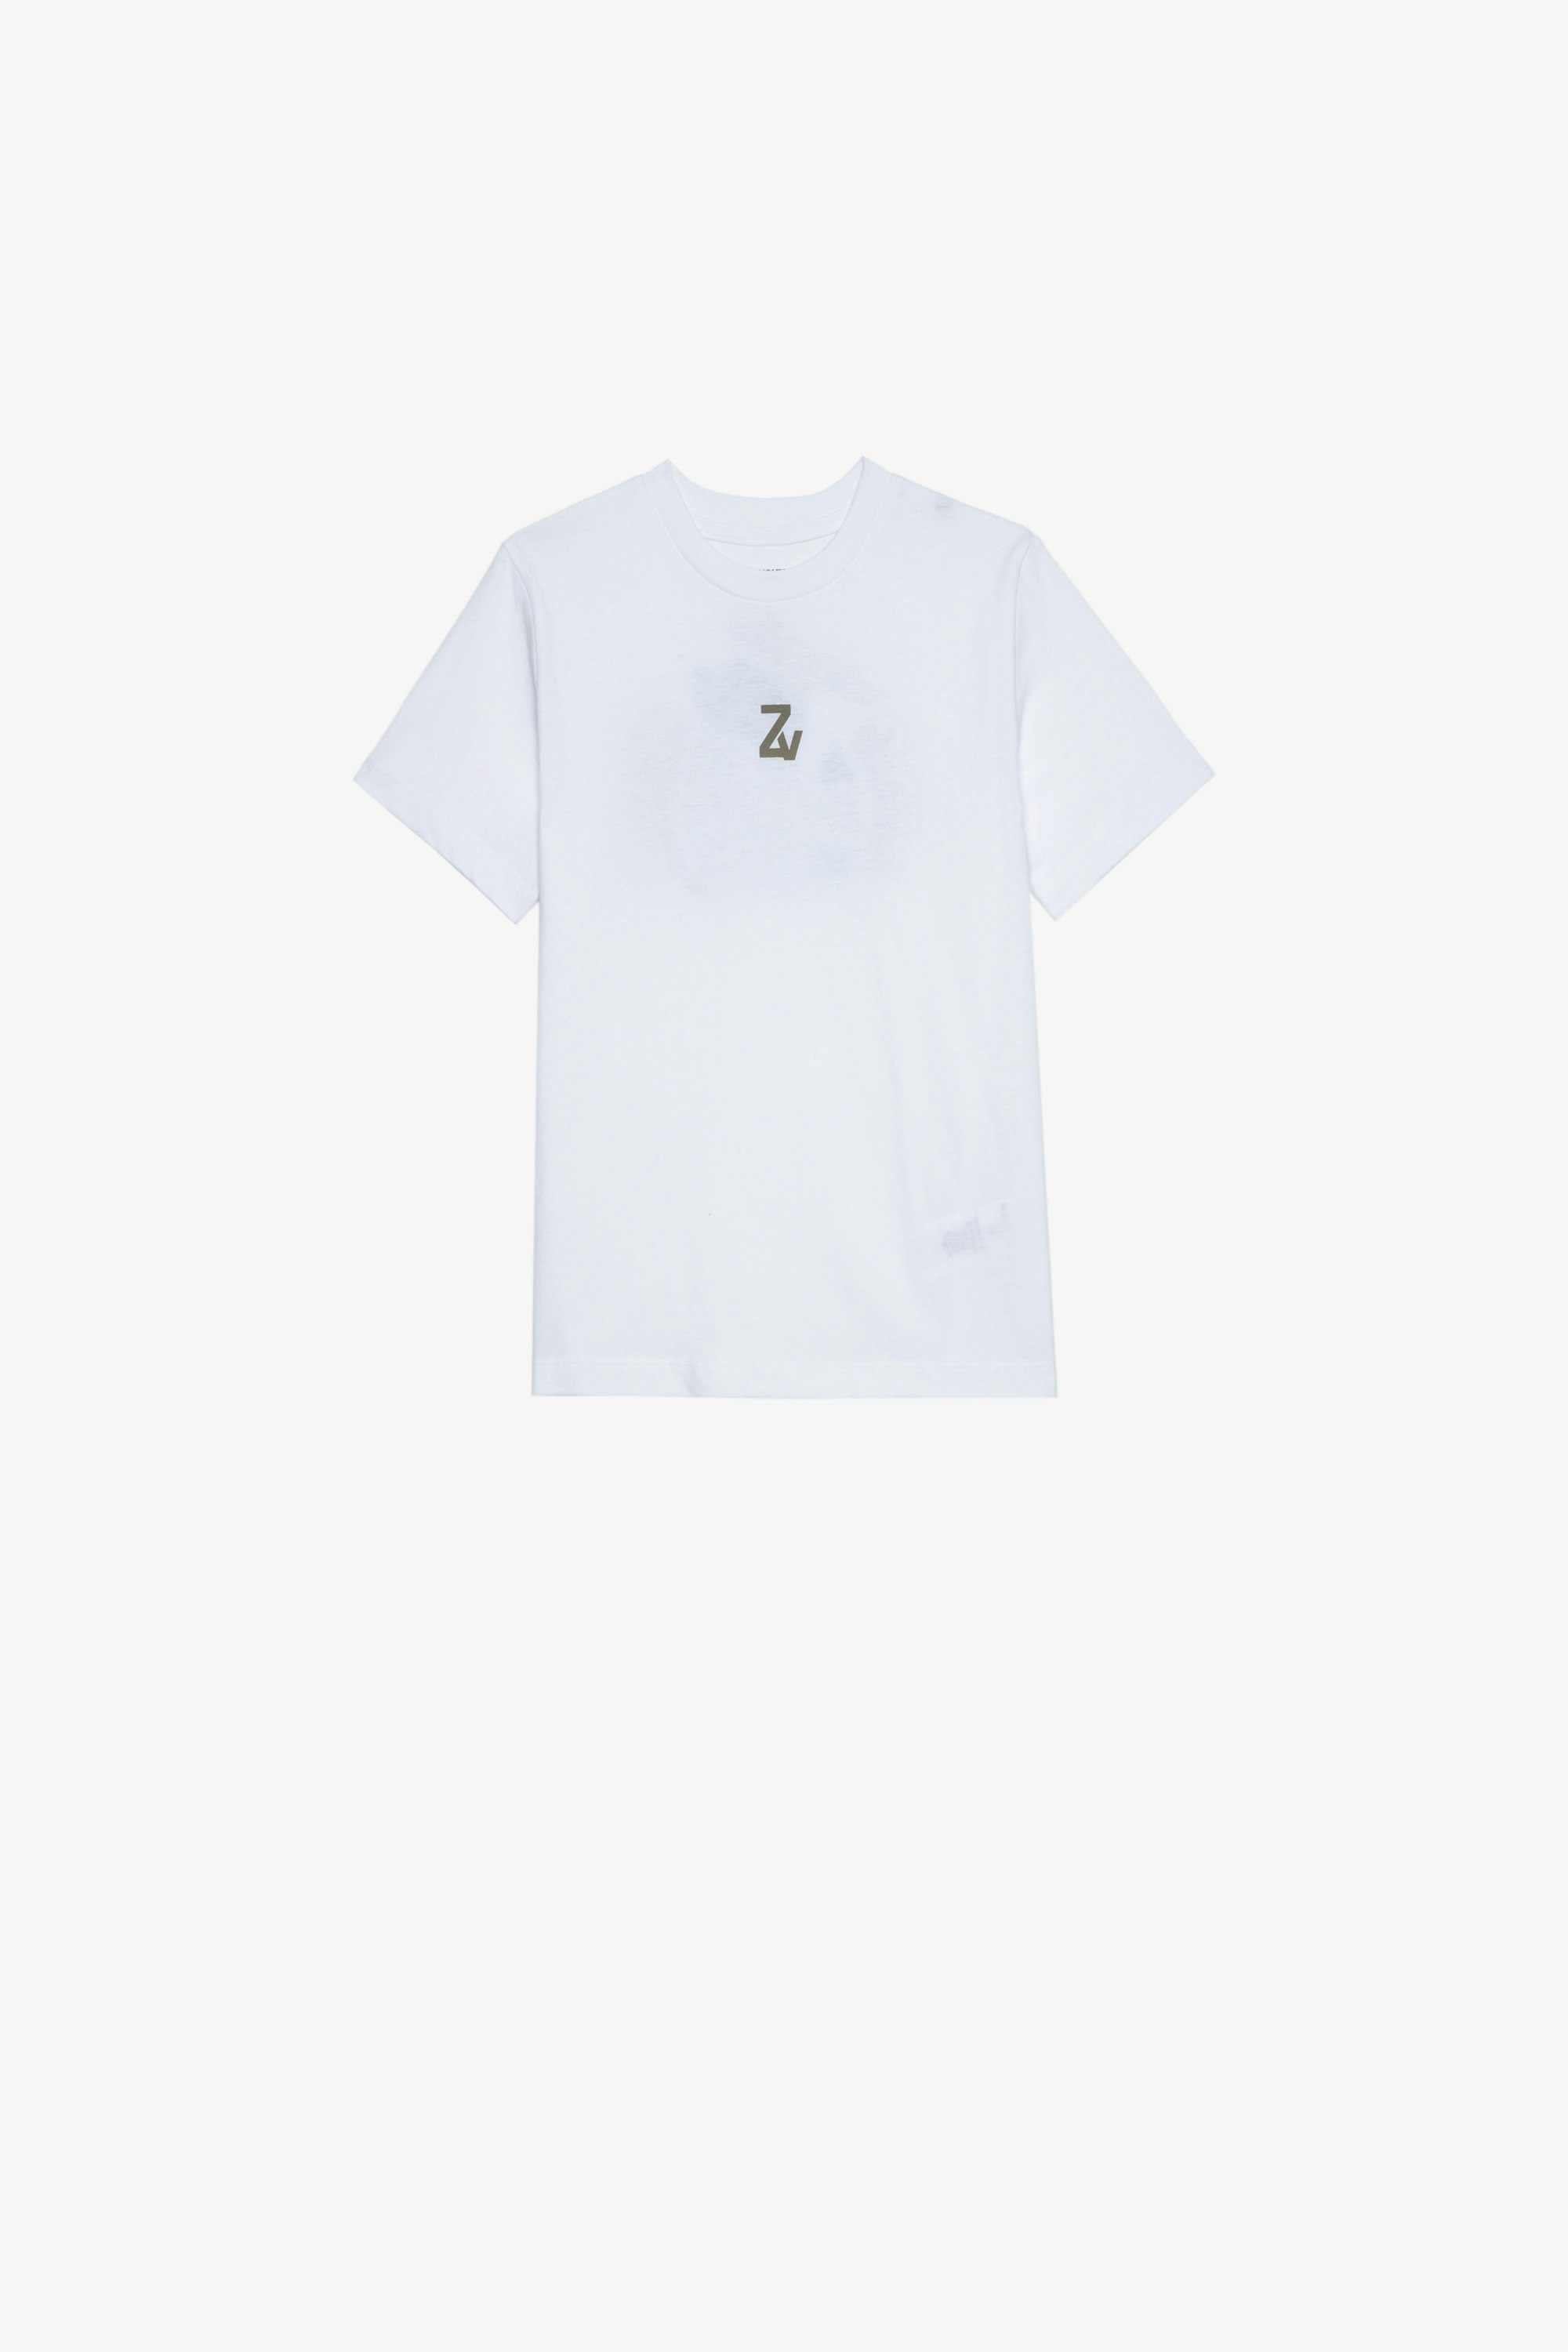 Kinder-T-Shirt Kita Kurzärmeliges Kinder-T-Shirt aus weißer Baumwolle mit Motiven auf Vorder- und Rückseite